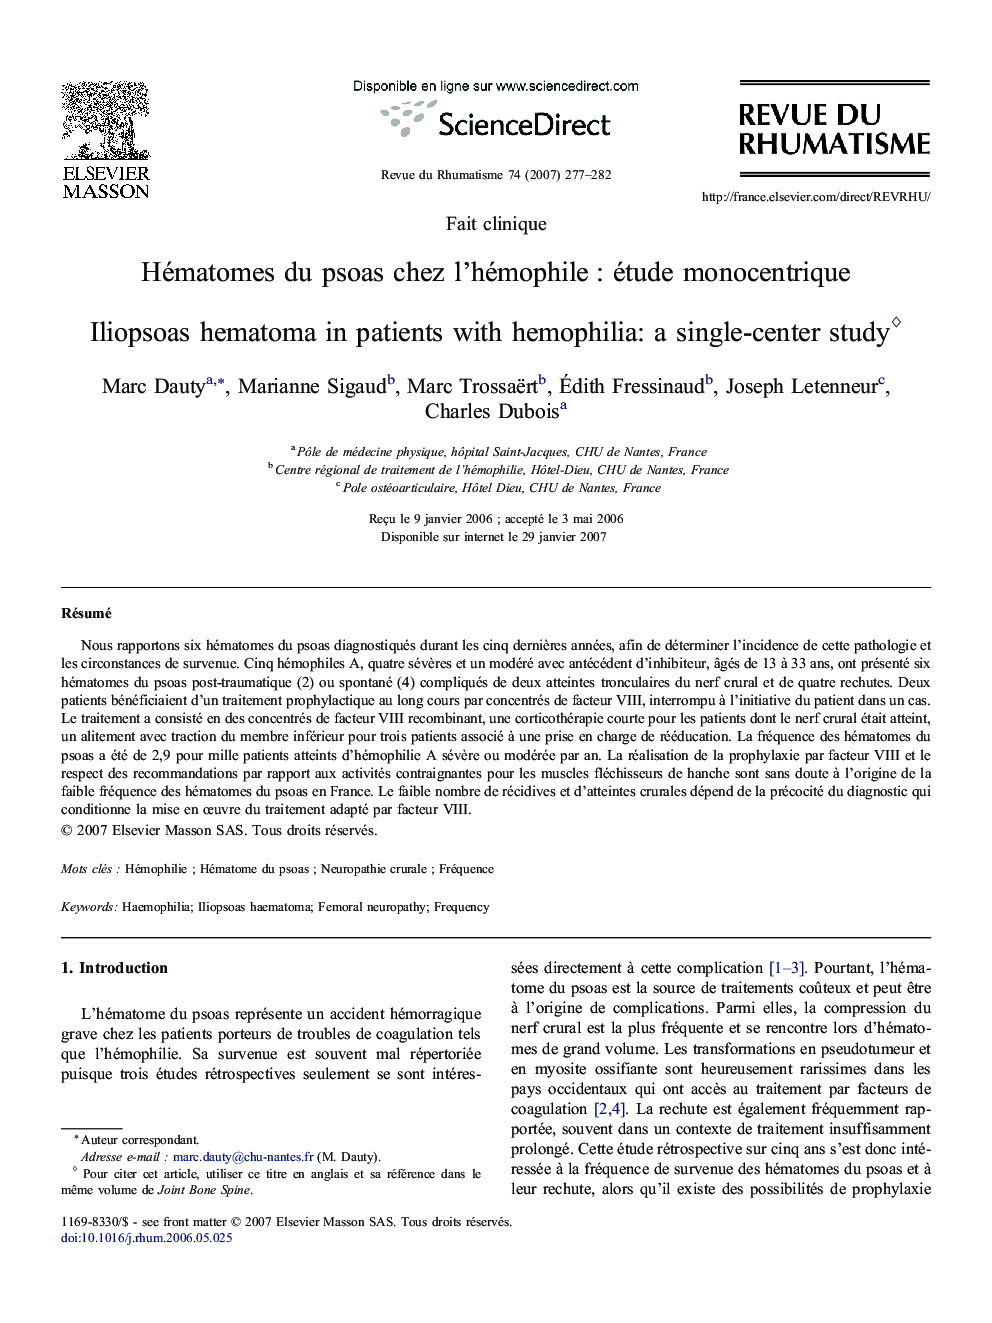 Hématomes du psoas chez l'hémophile : étude monocentrique